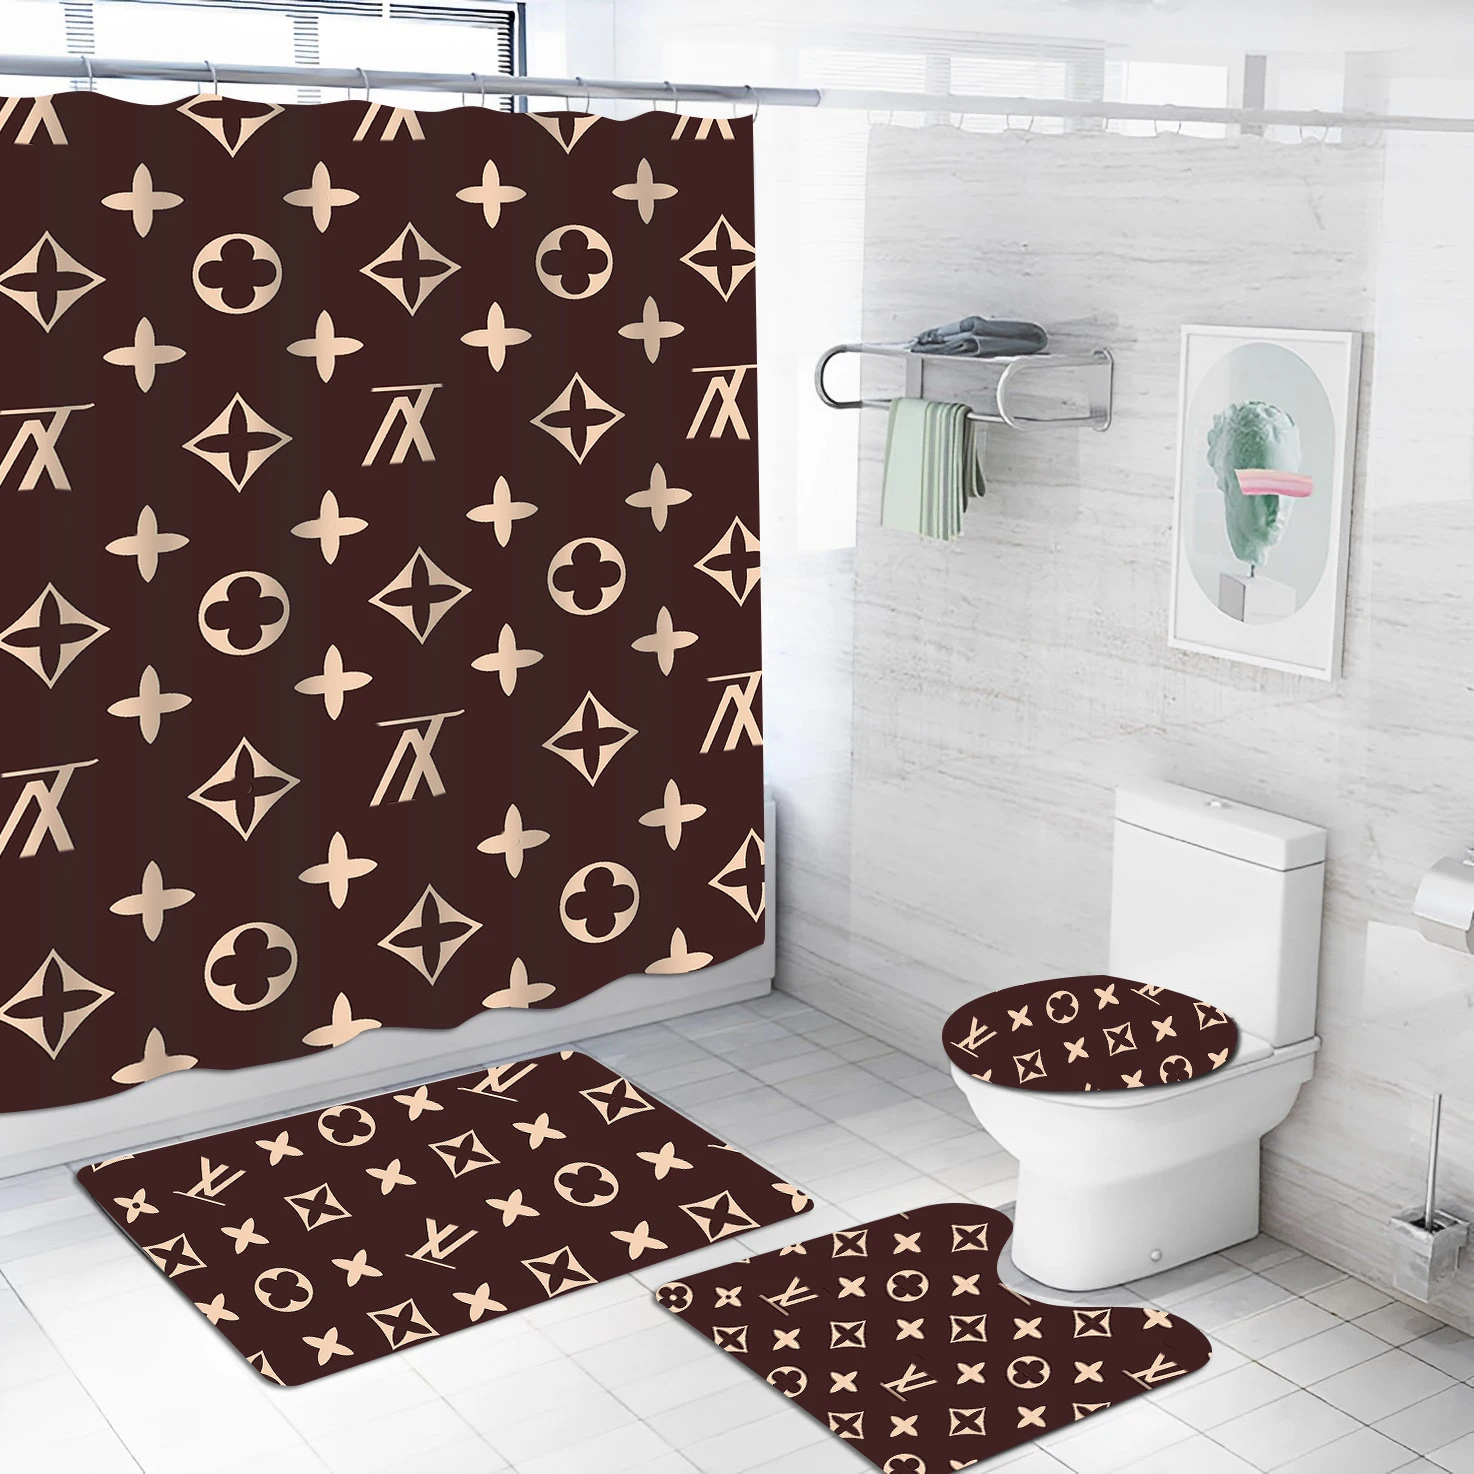 Luxury Lv Bathroom Sets Custom 3d Shower Curtain Customize Home ...